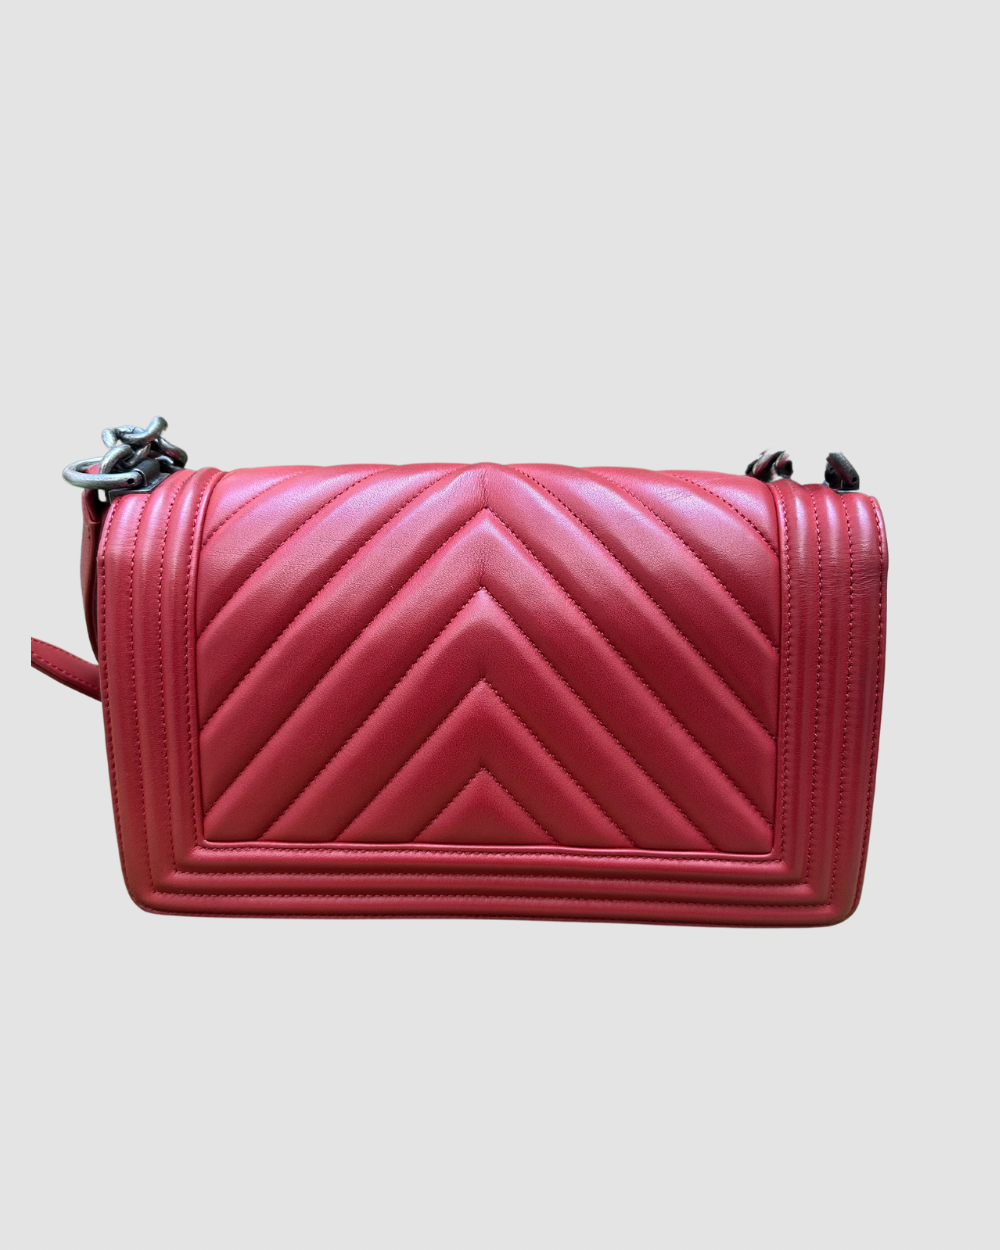 Chanel Red Chevron Lambskin Leather Medium Boy Bag RHW